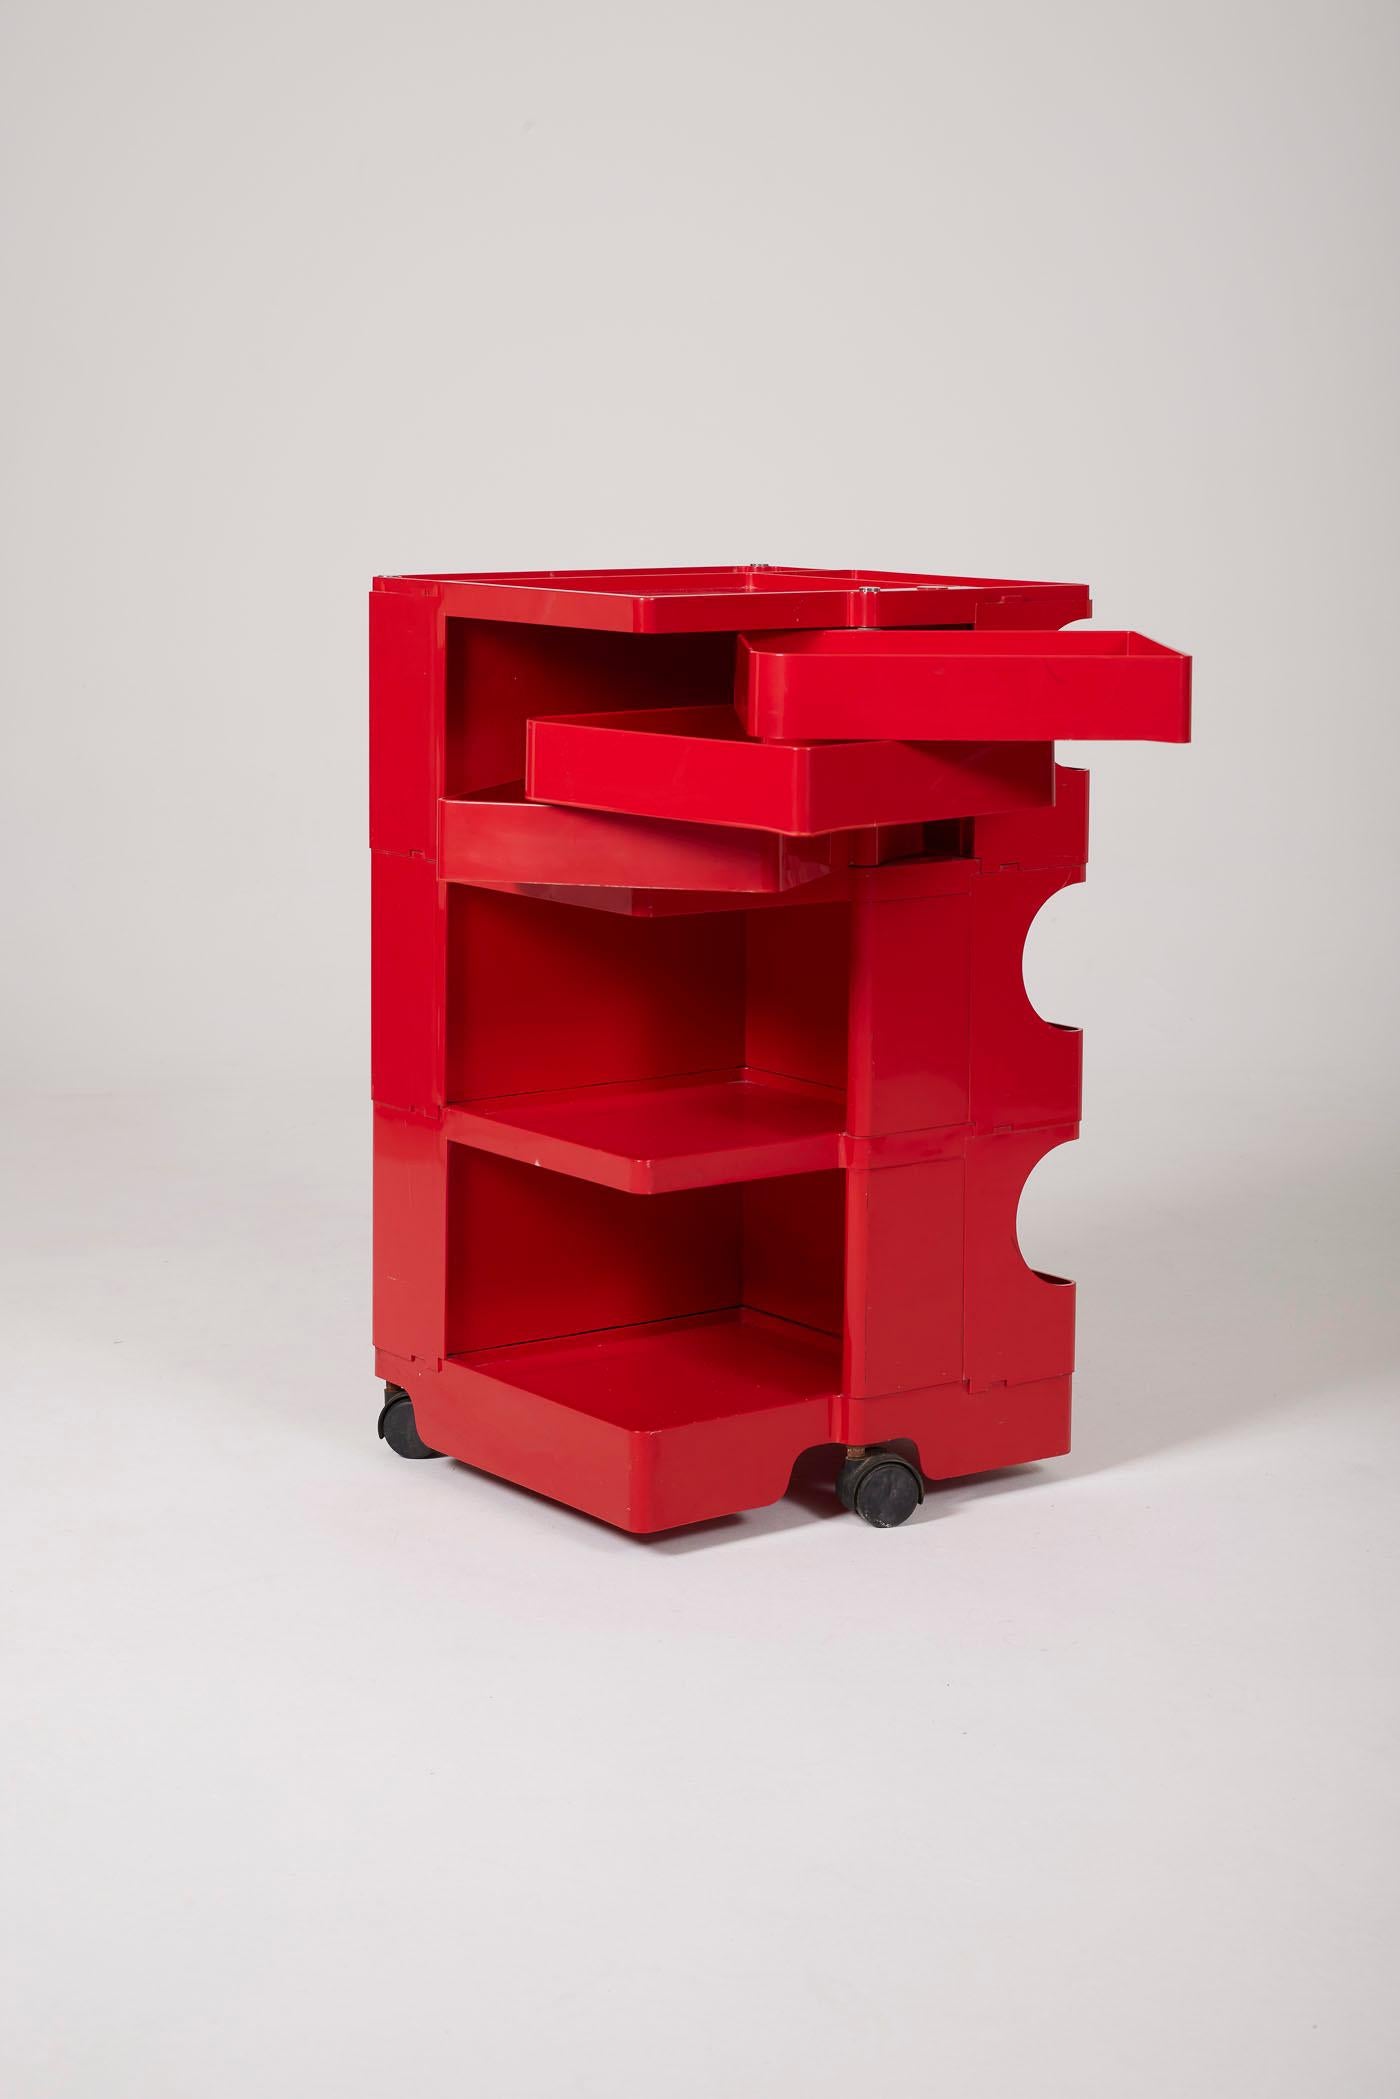 Roter Boby-Wagen des italienischen Designers Joe Colombo, 1970er Jahre. Dieser aus ABS-Kunststoff geformte Wagen ist modular aufgebaut und besteht aus 3 herausnehmbaren Schubladen, die auf Rädern montiert sind. Sie ist im MATERIAL unterzeichnet.